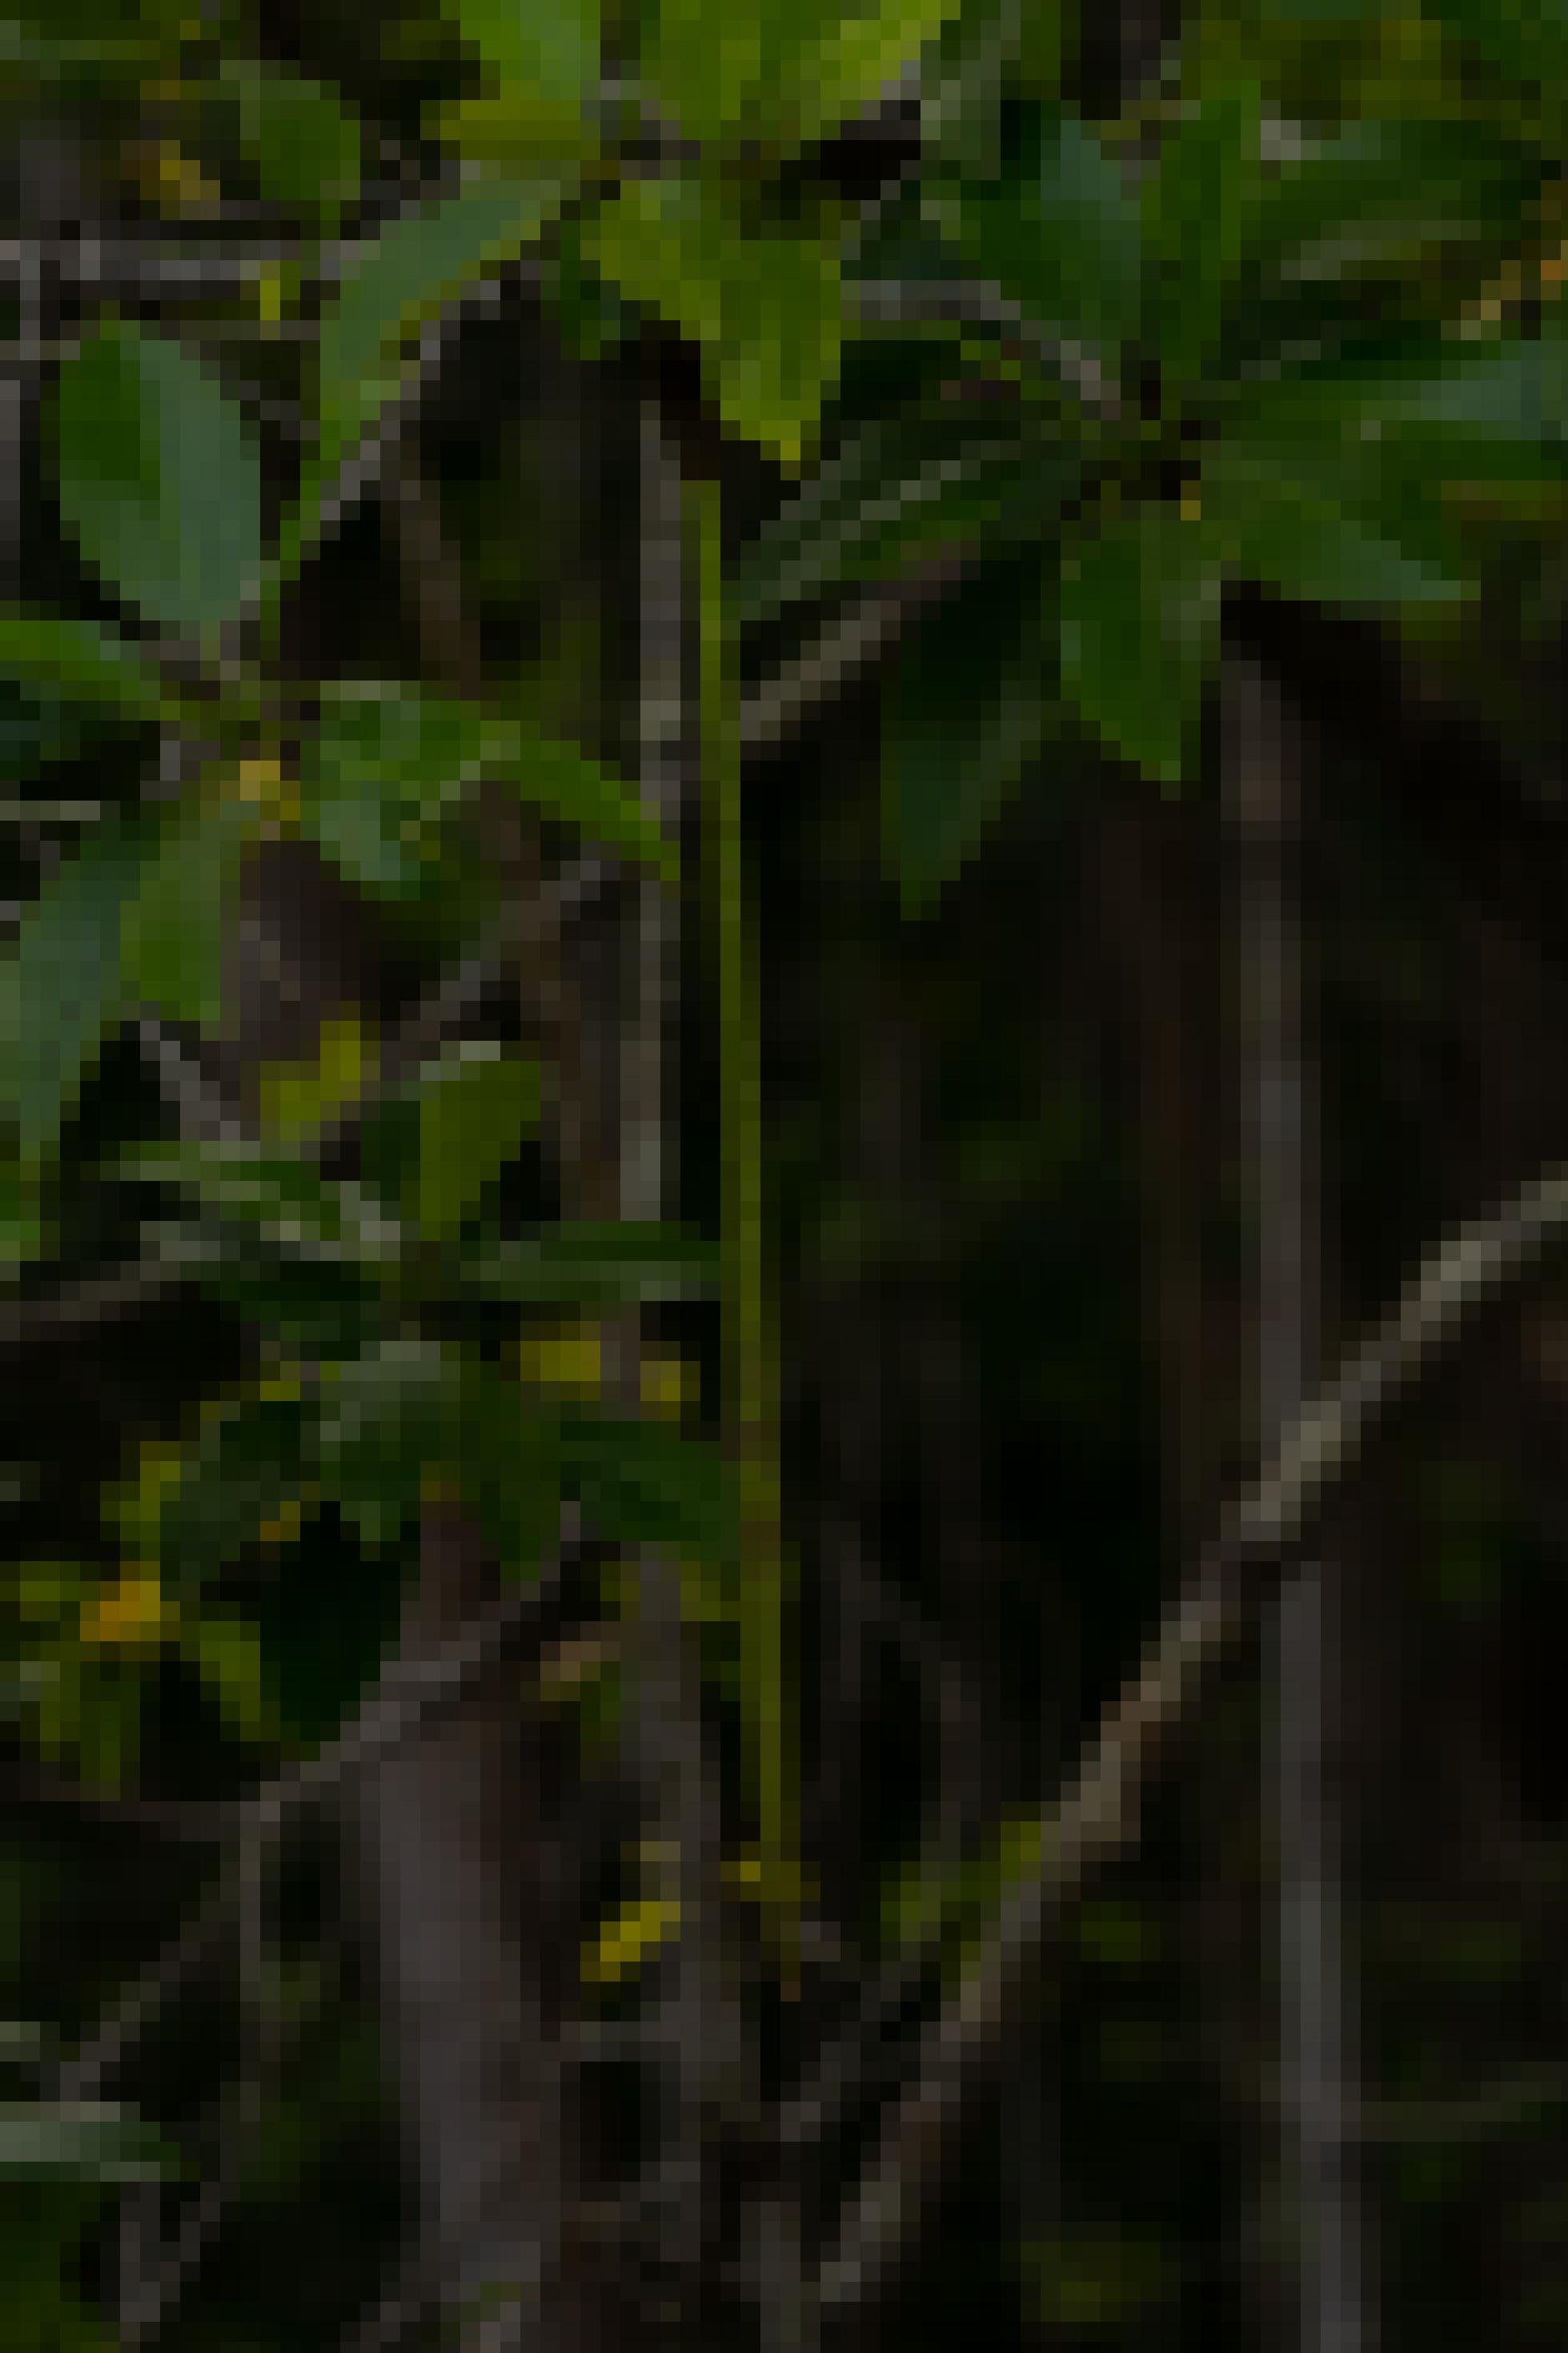 Schotenähnlicher Mangrovenspross am Elternbaum.